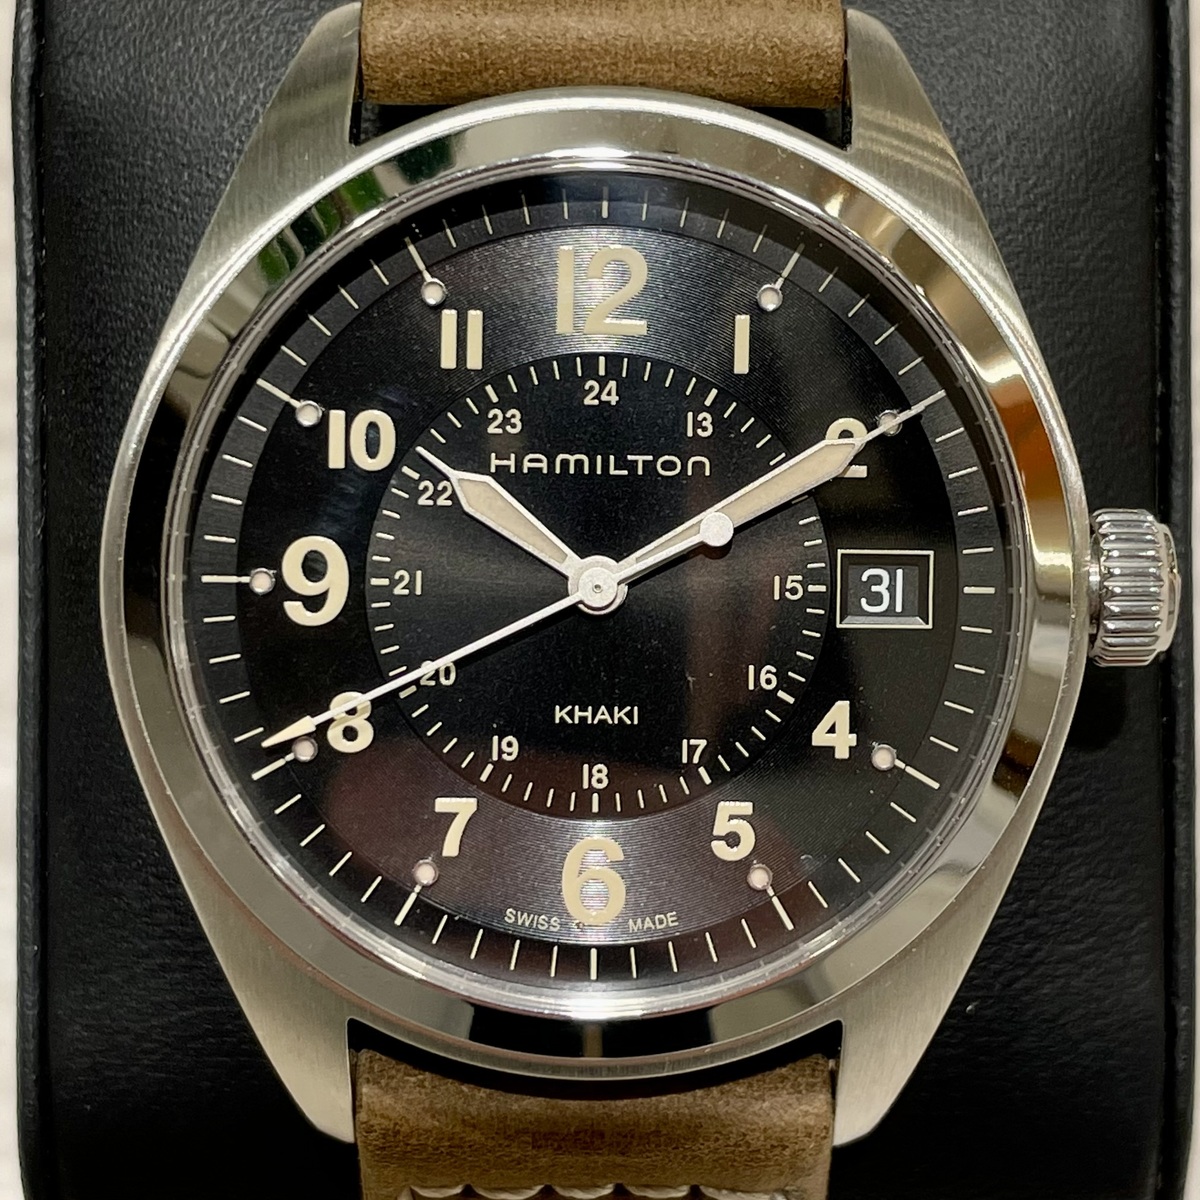 ハミルトンのS/S H685510 カーキフィールド クオーツ時計の買取実績です。